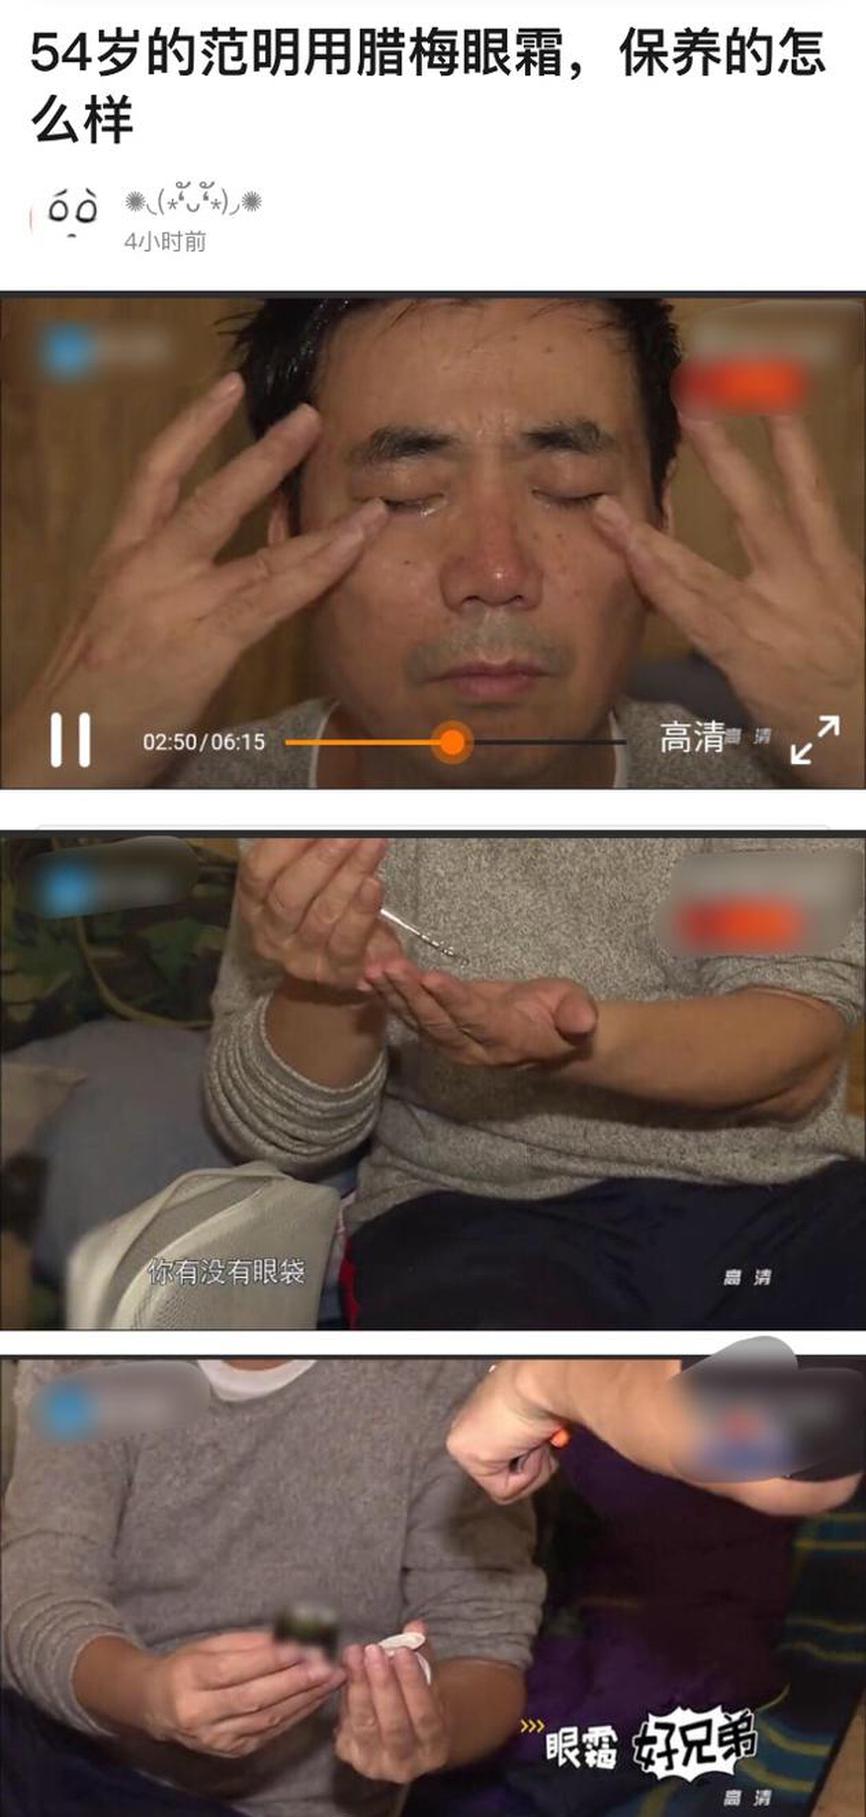 范明使用眼霜的手法十分熟练。